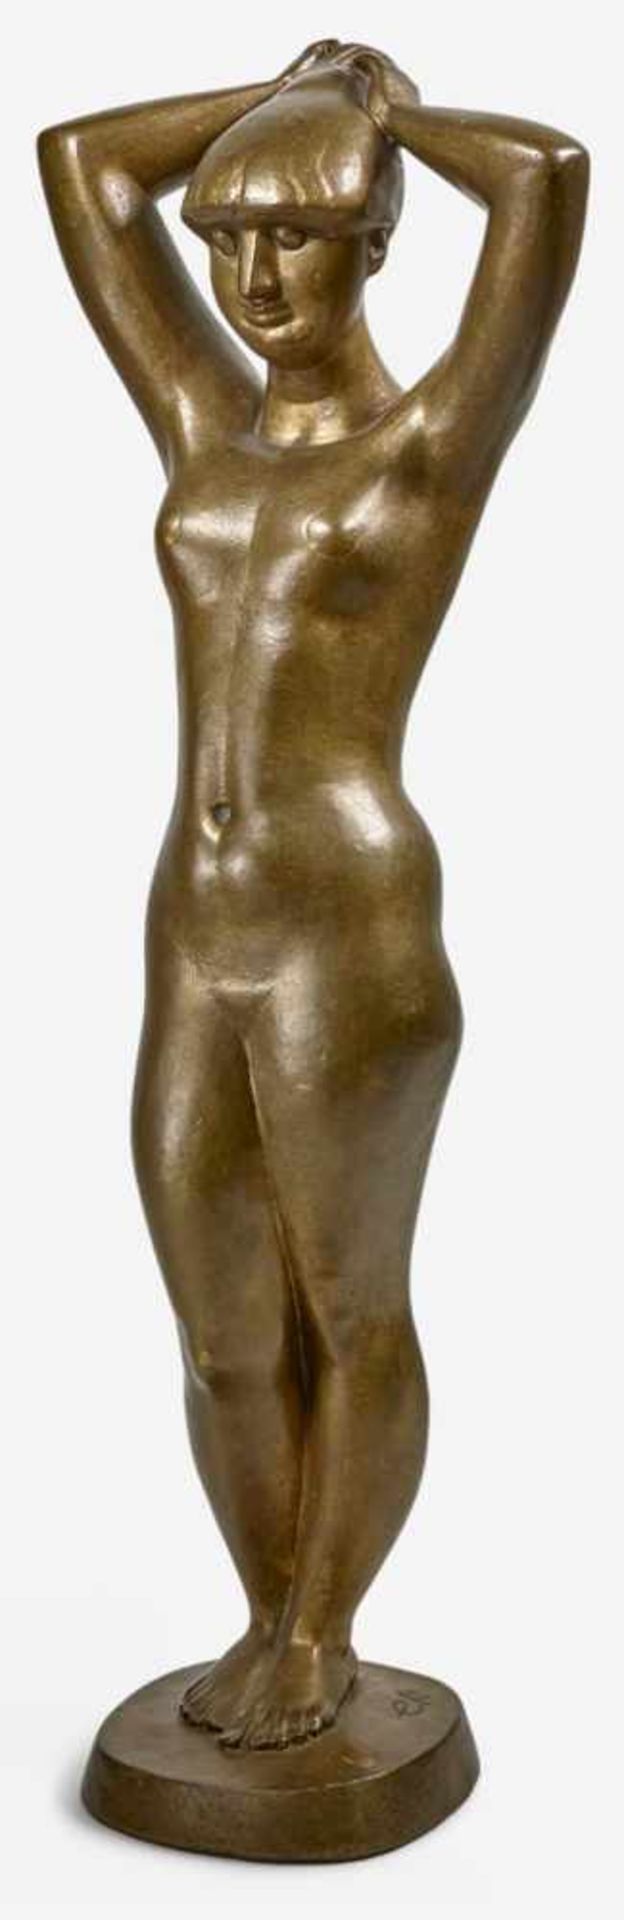 Ewel, Gerd: EvaEvaBronze mit goldbrauner Patina. 1965.51 x 18 x 10 cm.Auf der Bronzeplinthe rechts - Image 2 of 2